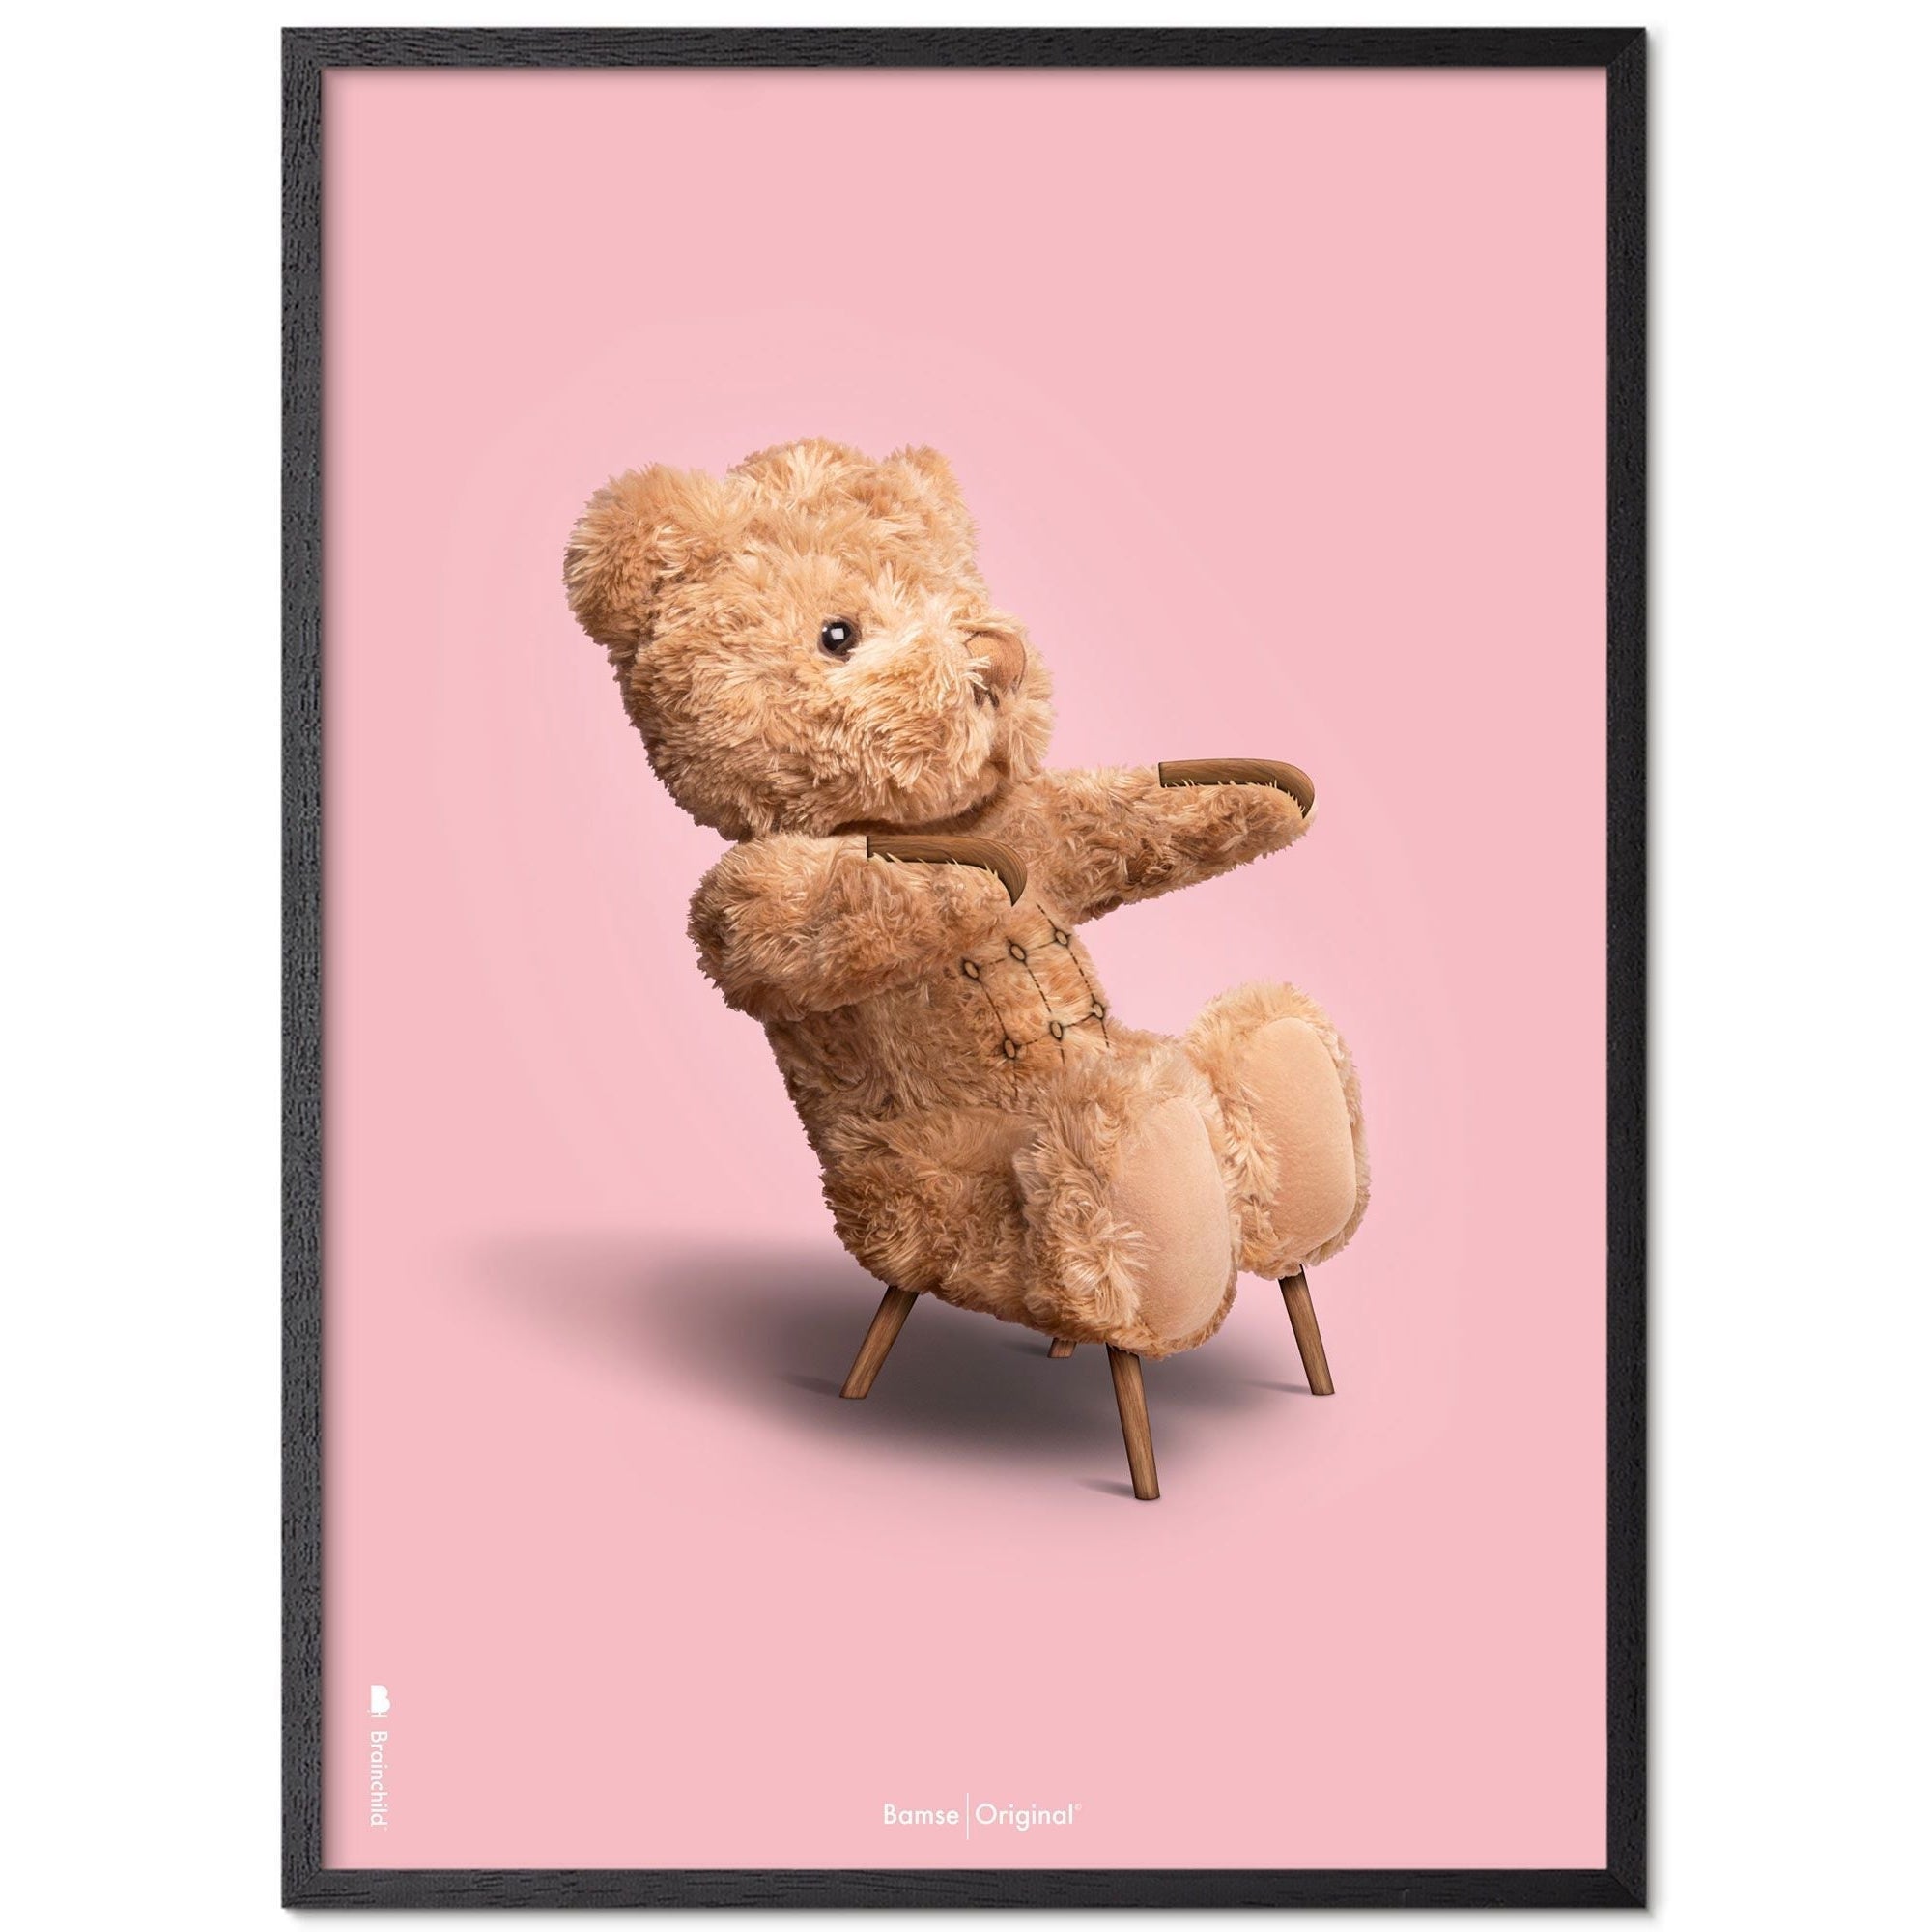 Brainchild Teddy Bear Classic plakát z plakátu vyrobený z černého lakovaného dřeva 50x70 cm, růžové pozadí